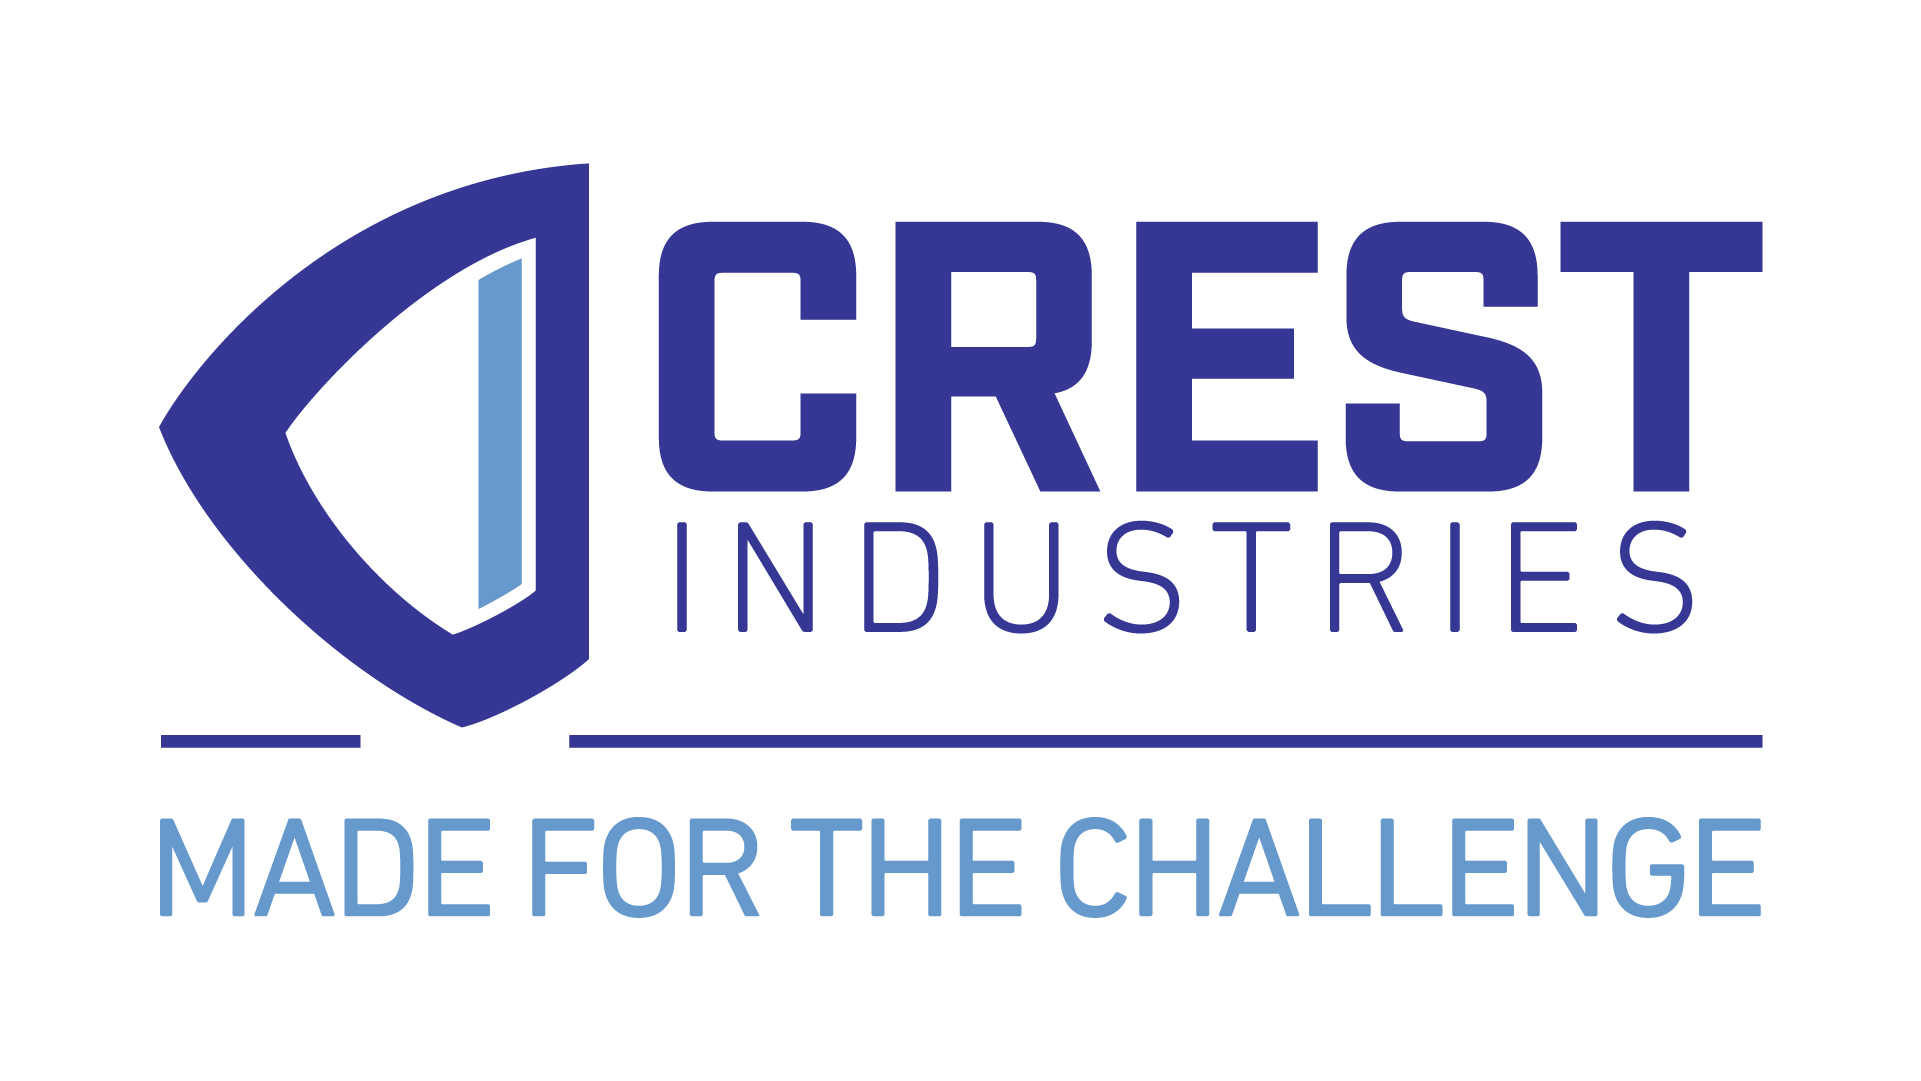 Crest Industries